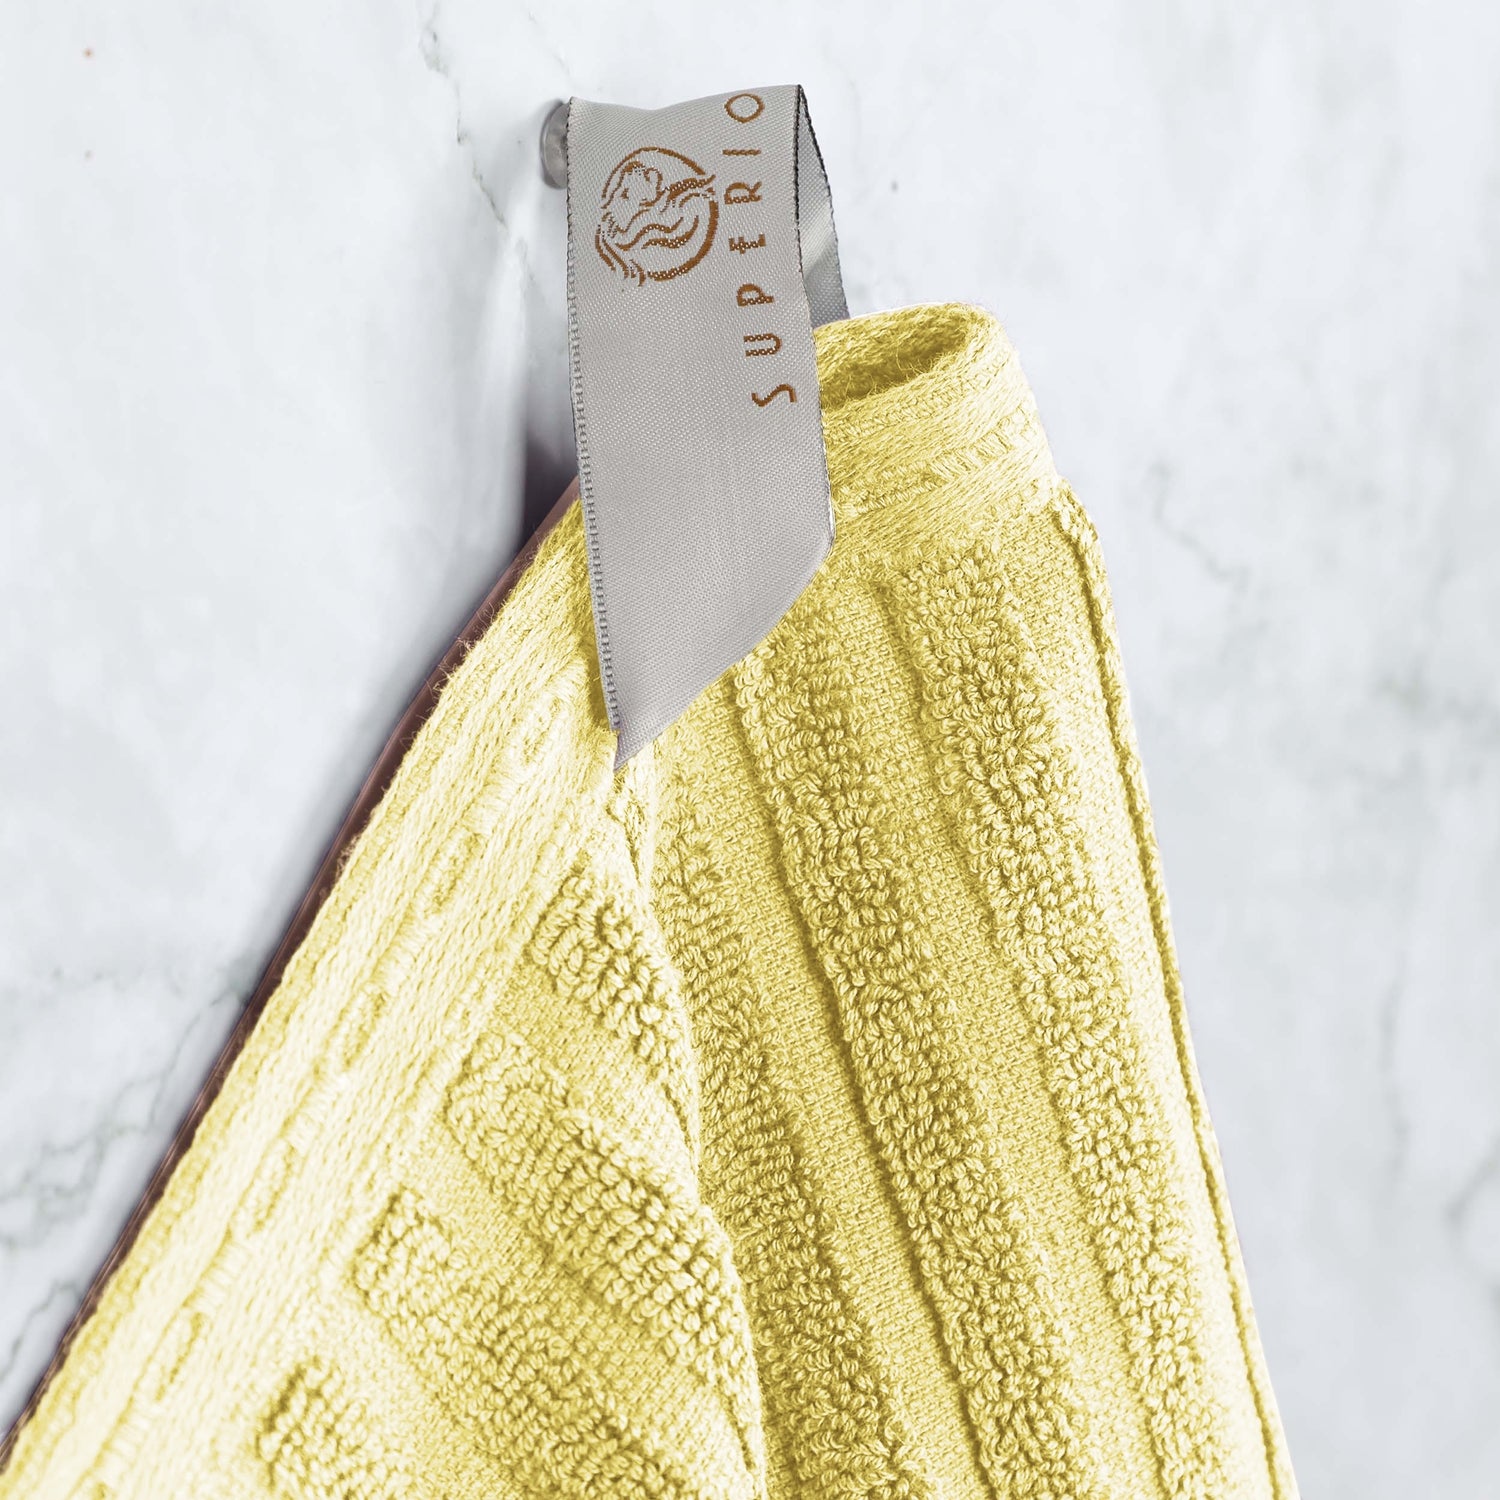 Ribbed Textured Cotton Bath Sheet Ultra-Absorbent Towel Set -  Golden Mist